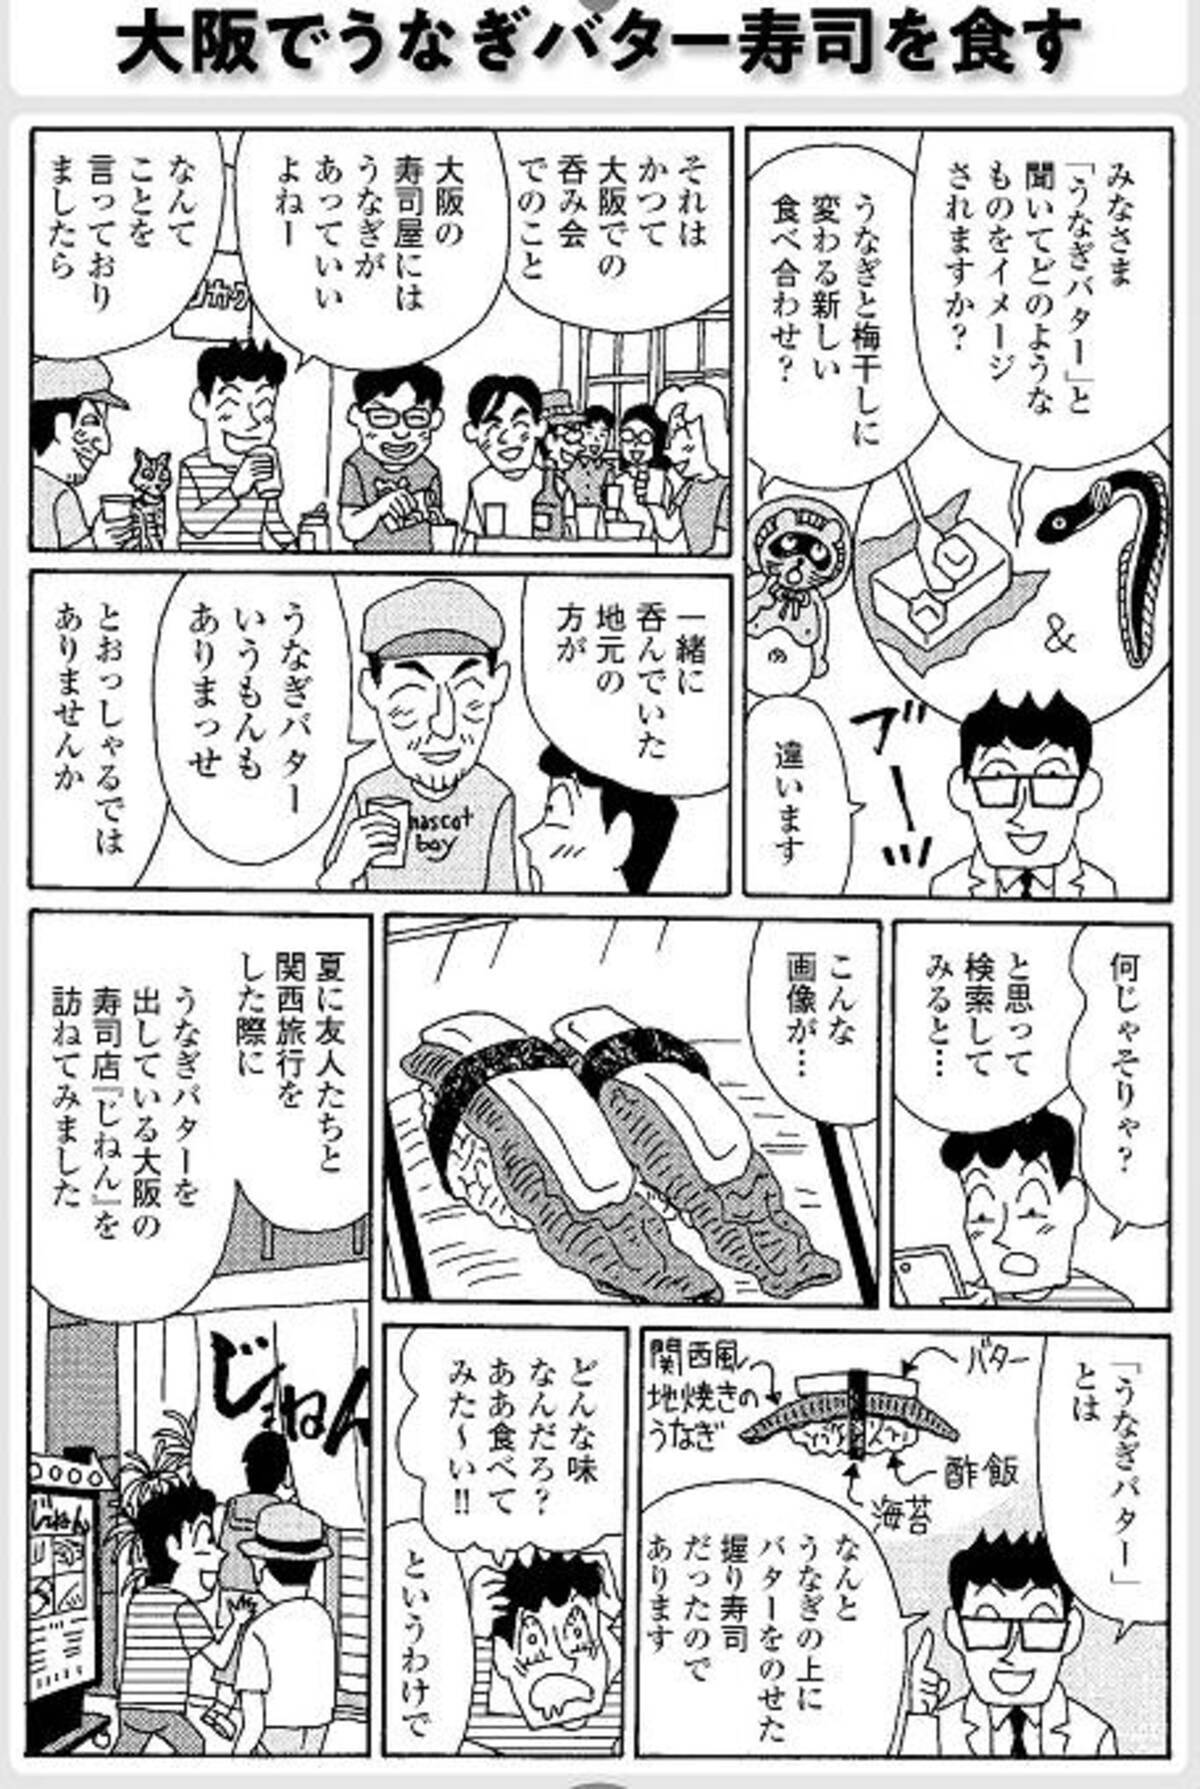 大阪でうなぎバター寿司を食す ラズウェル細木の漫画エッセイ グルメ宝島 7 21年7月24日 エキサイトニュース